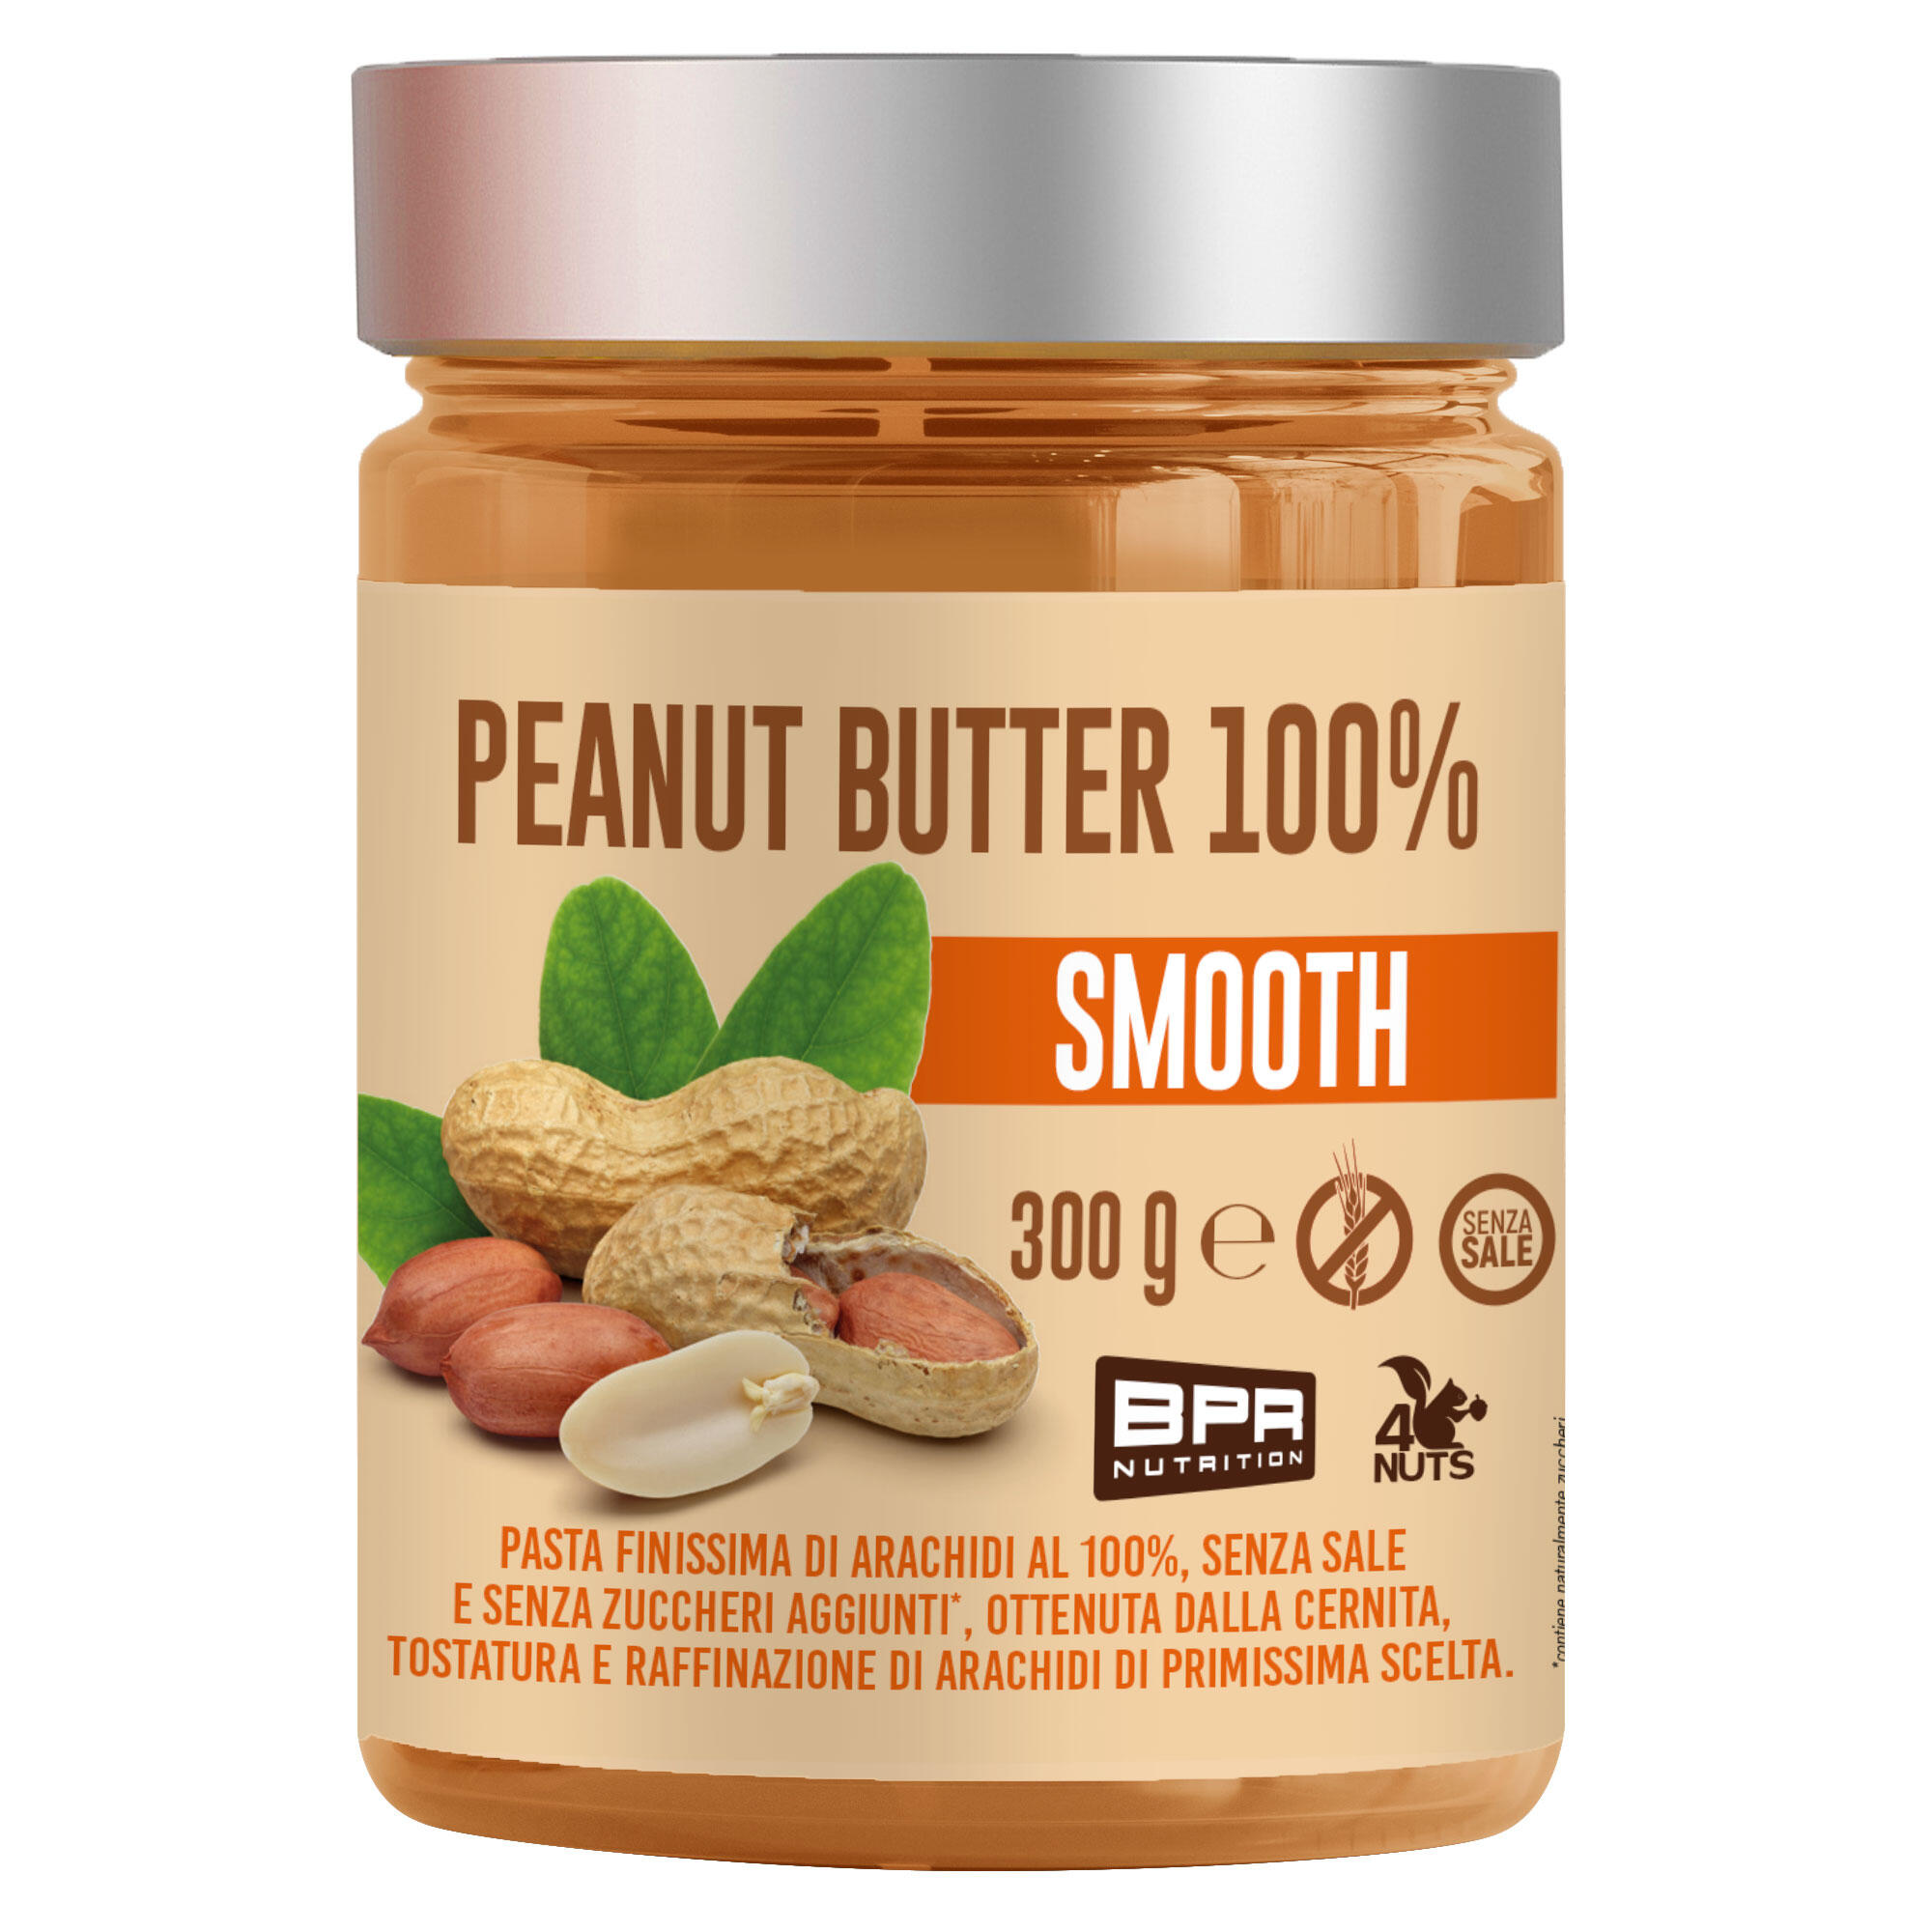 Decathlon | Peanut Butter smooth BPR senza sale e senza zuccheri aggiunti 300 g |  Bpr Nutrition